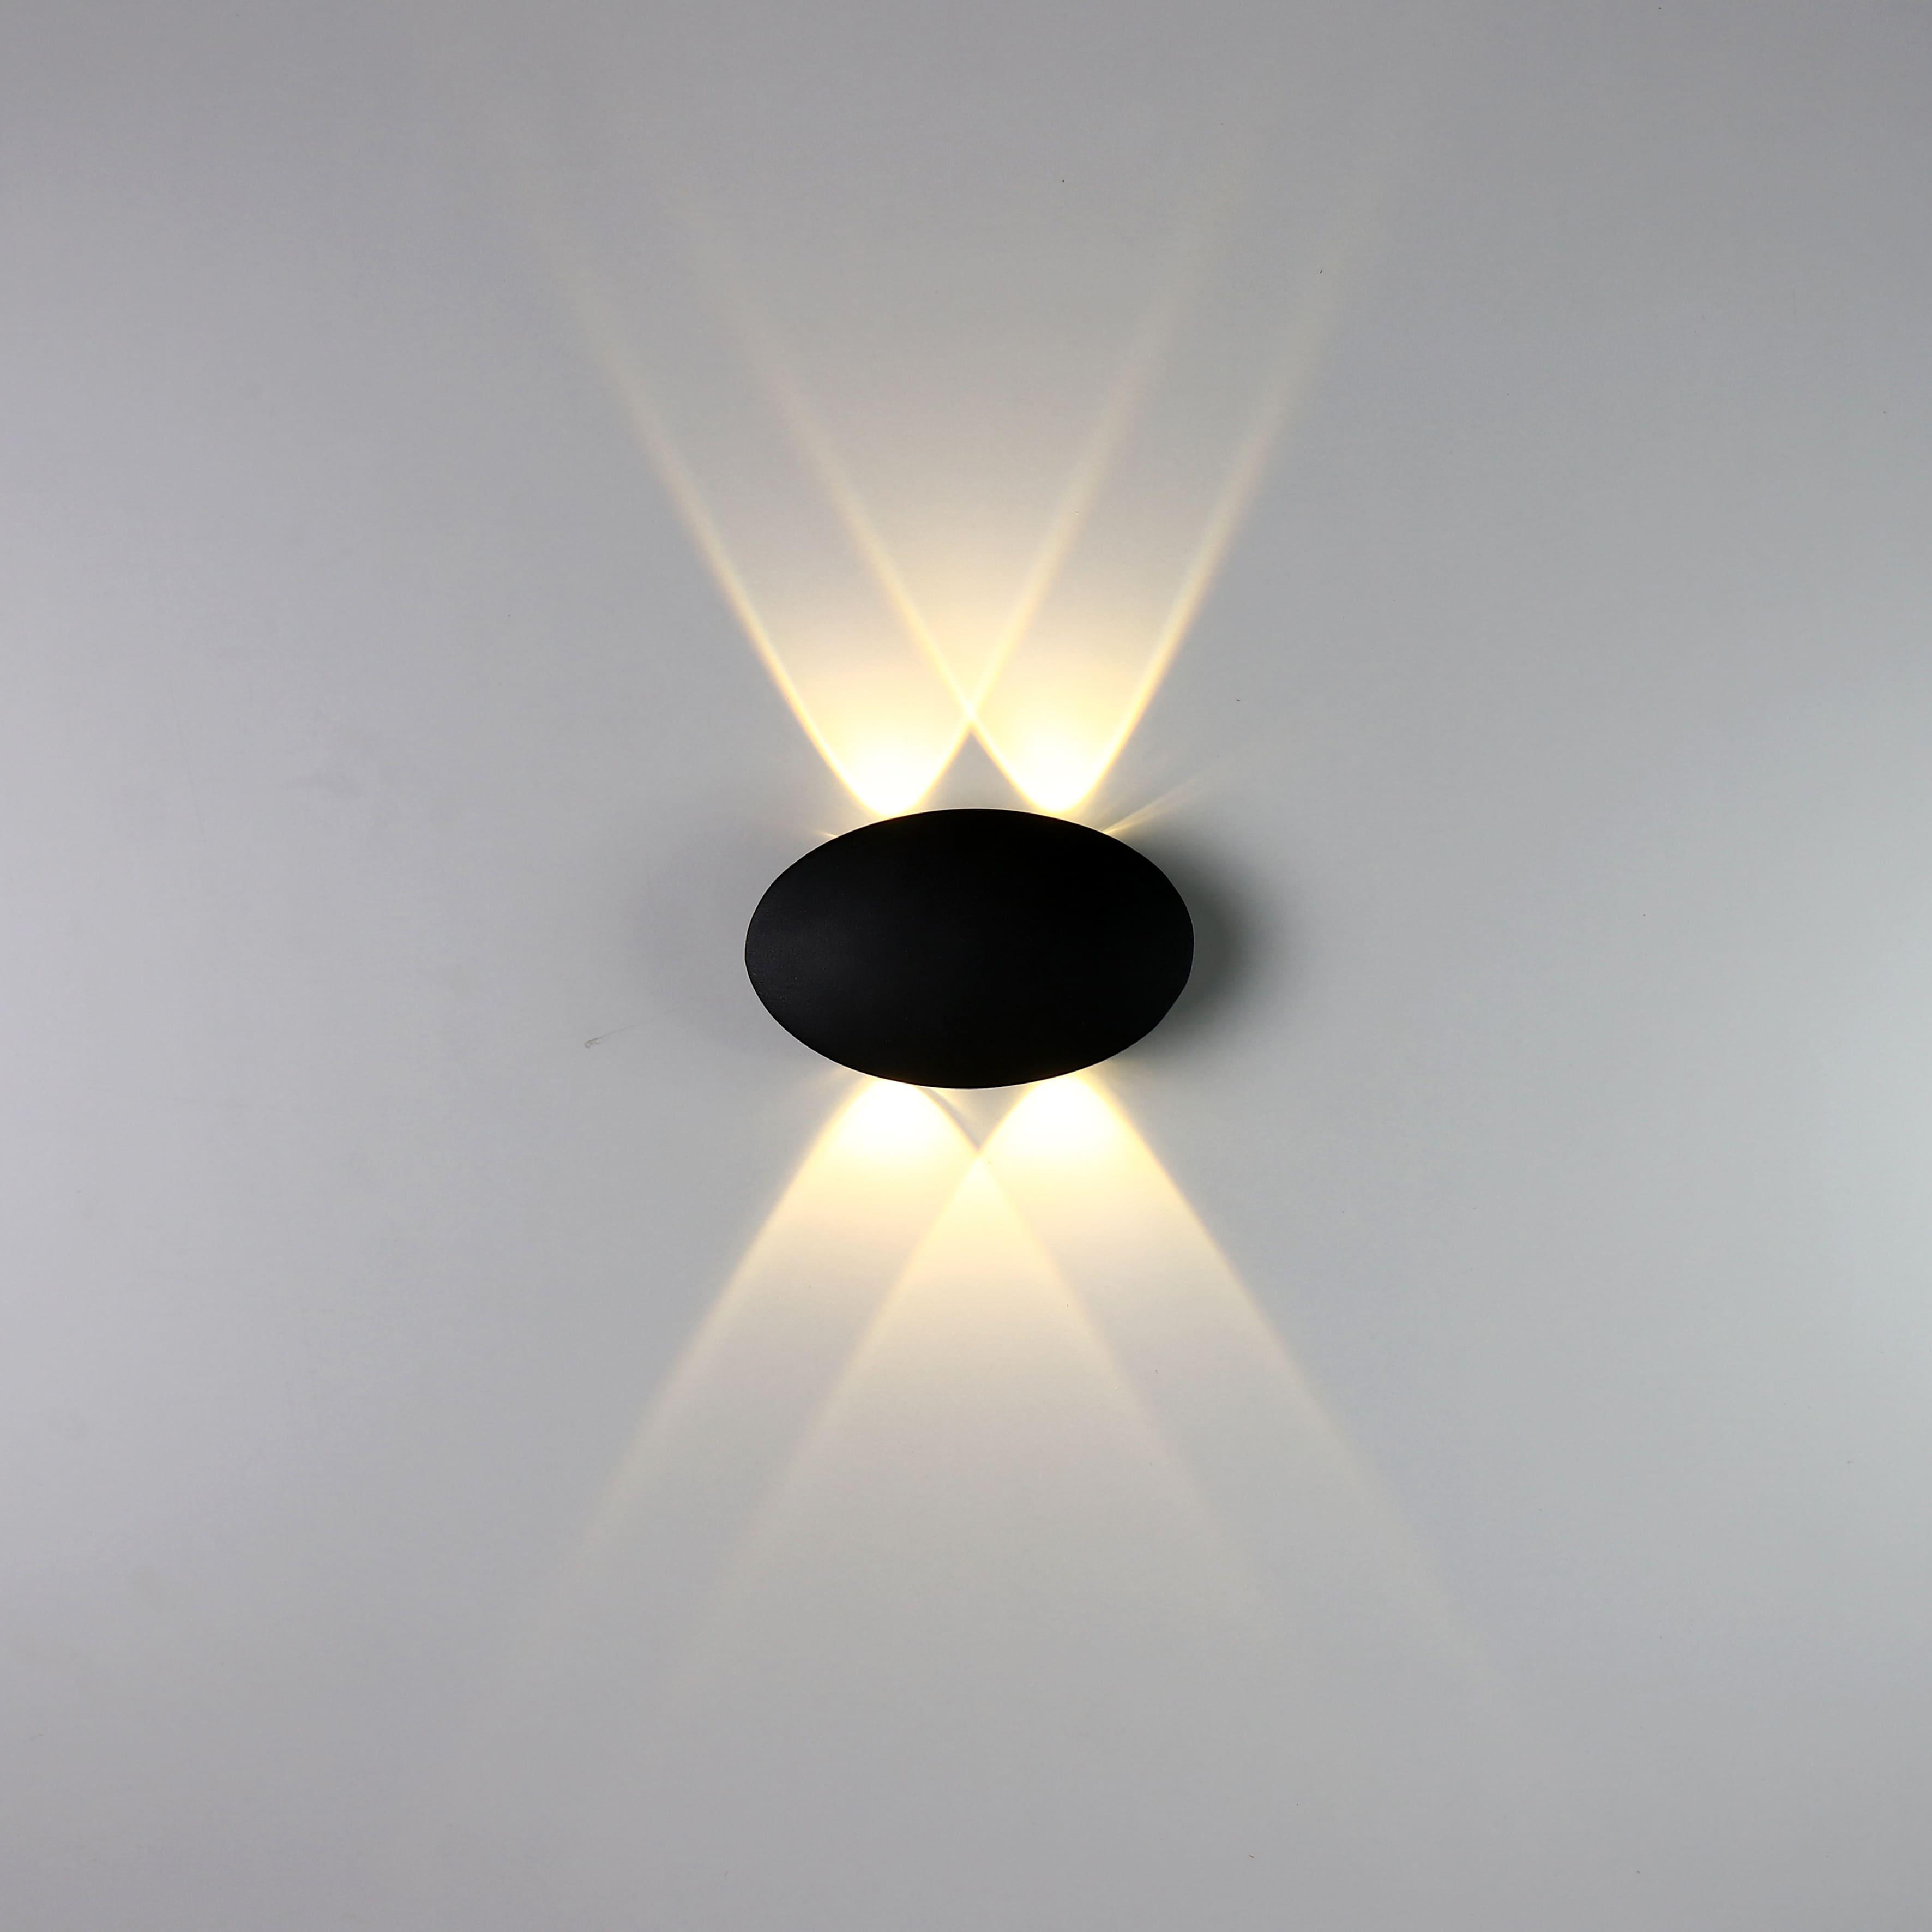 اضاءة اب داون الروضة الومنيوم أسود - 8×13 سم - 4 لمبة - RL-UD-A-002